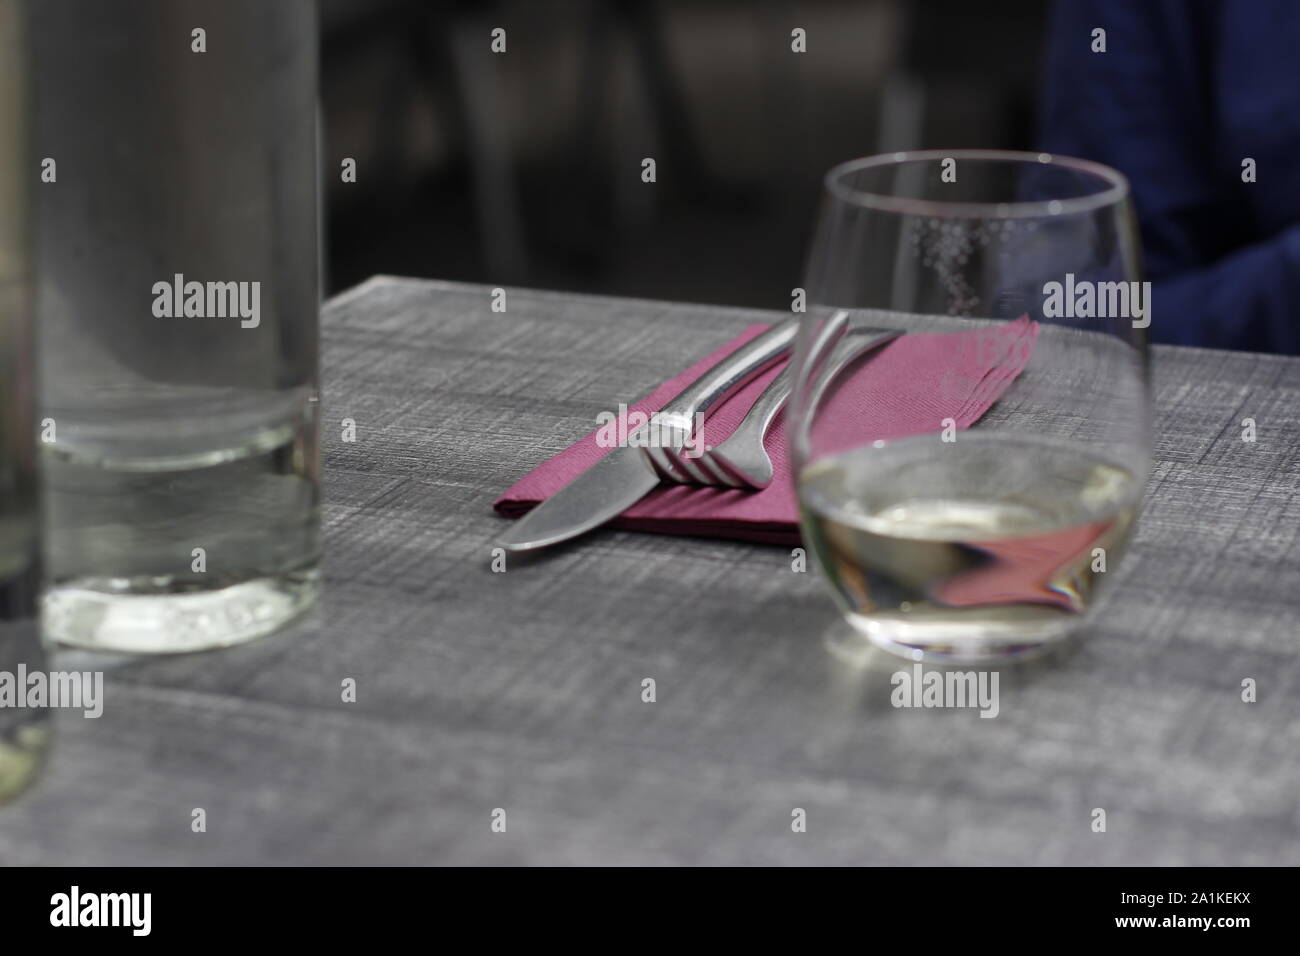 Die Abbildung zeigt ein Cafe oder Restaurant Tabelle einschliesslich Besteck, Serviette und einem Glas Wasser und einer Flasche Wasser Stockfoto